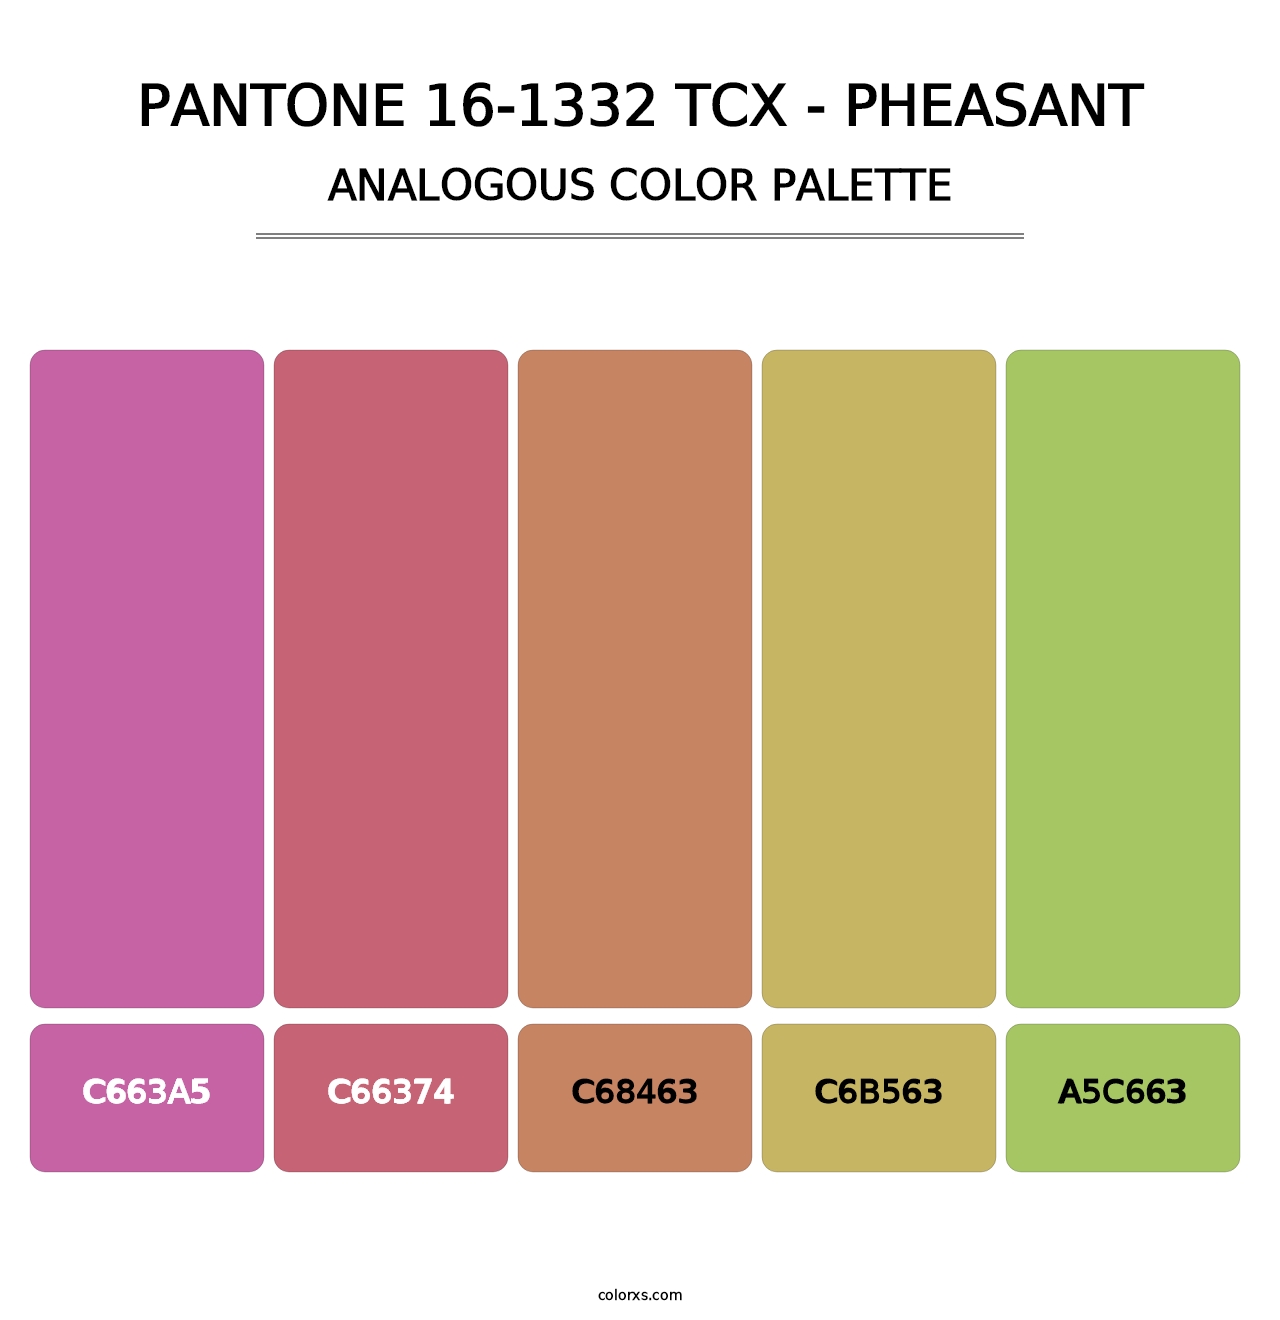 PANTONE 16-1332 TCX - Pheasant - Analogous Color Palette